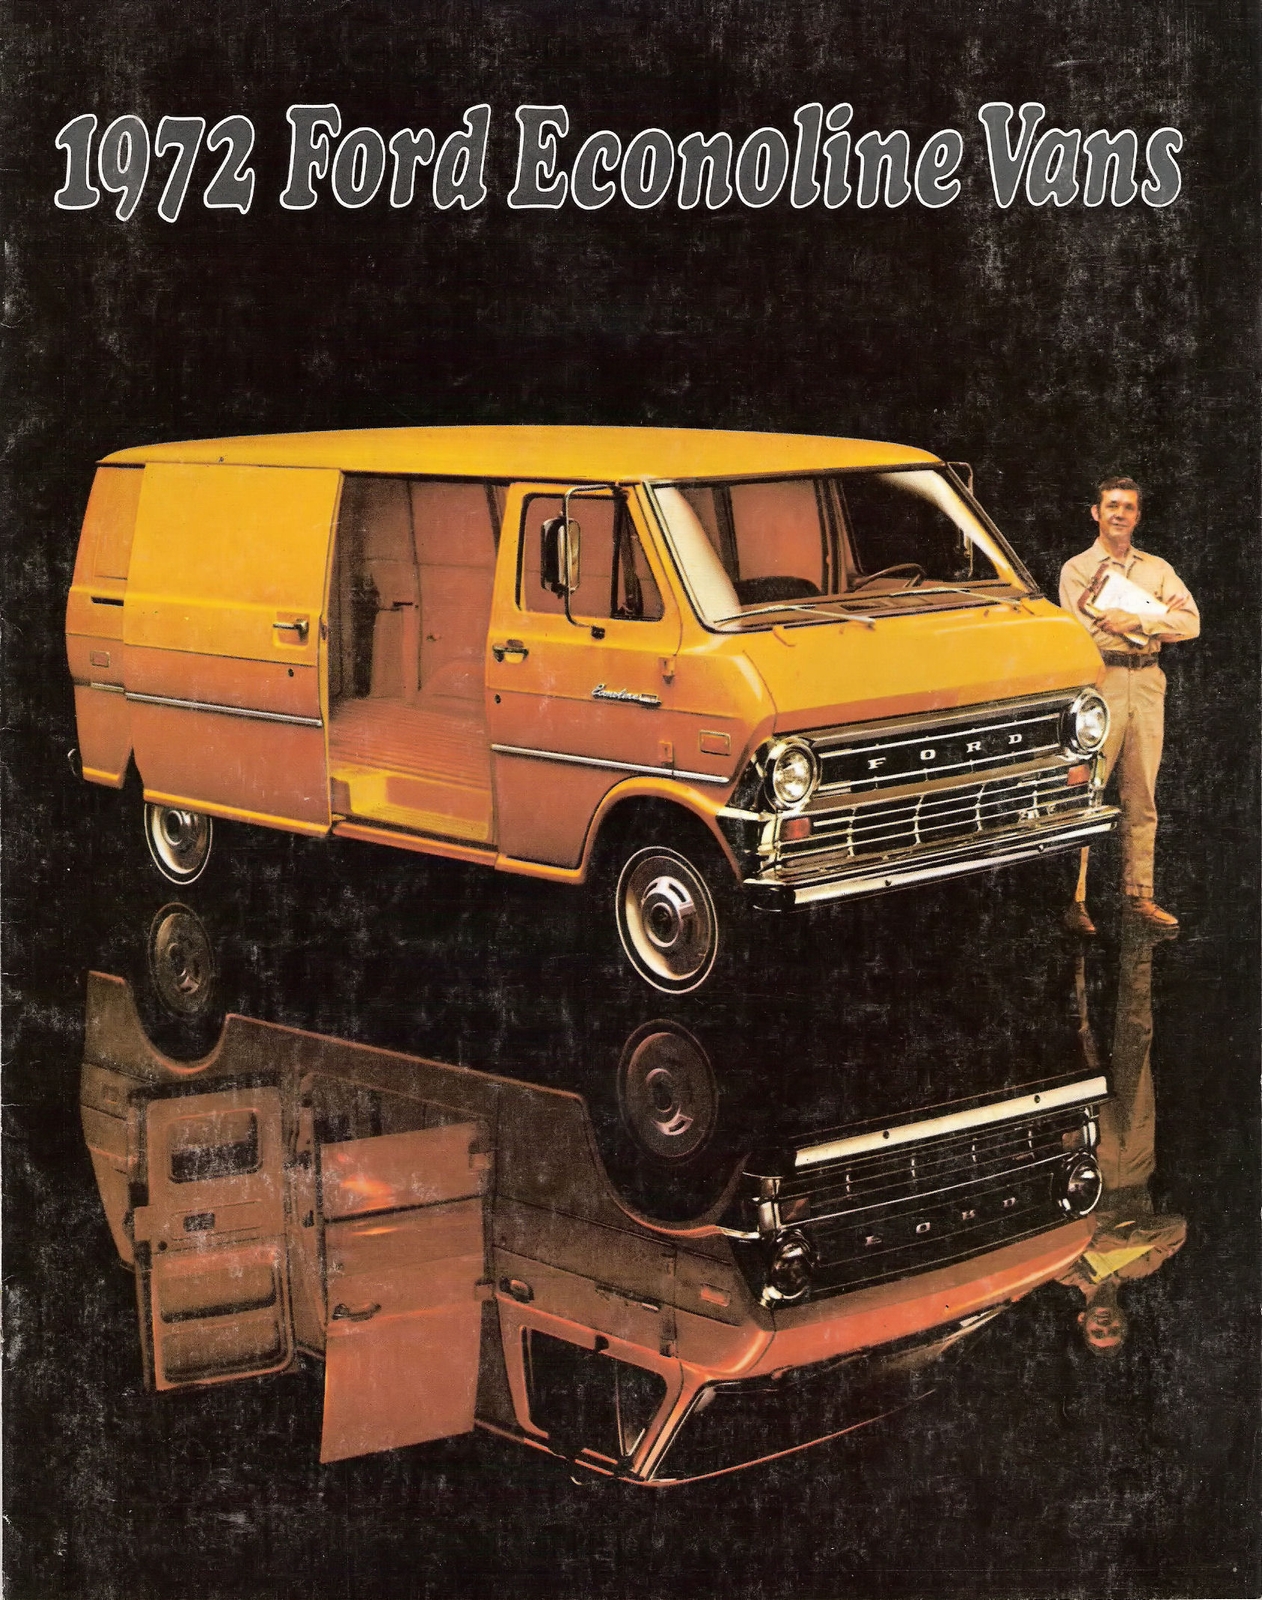 n_1972 Ford Econoline Vans-01.jpg